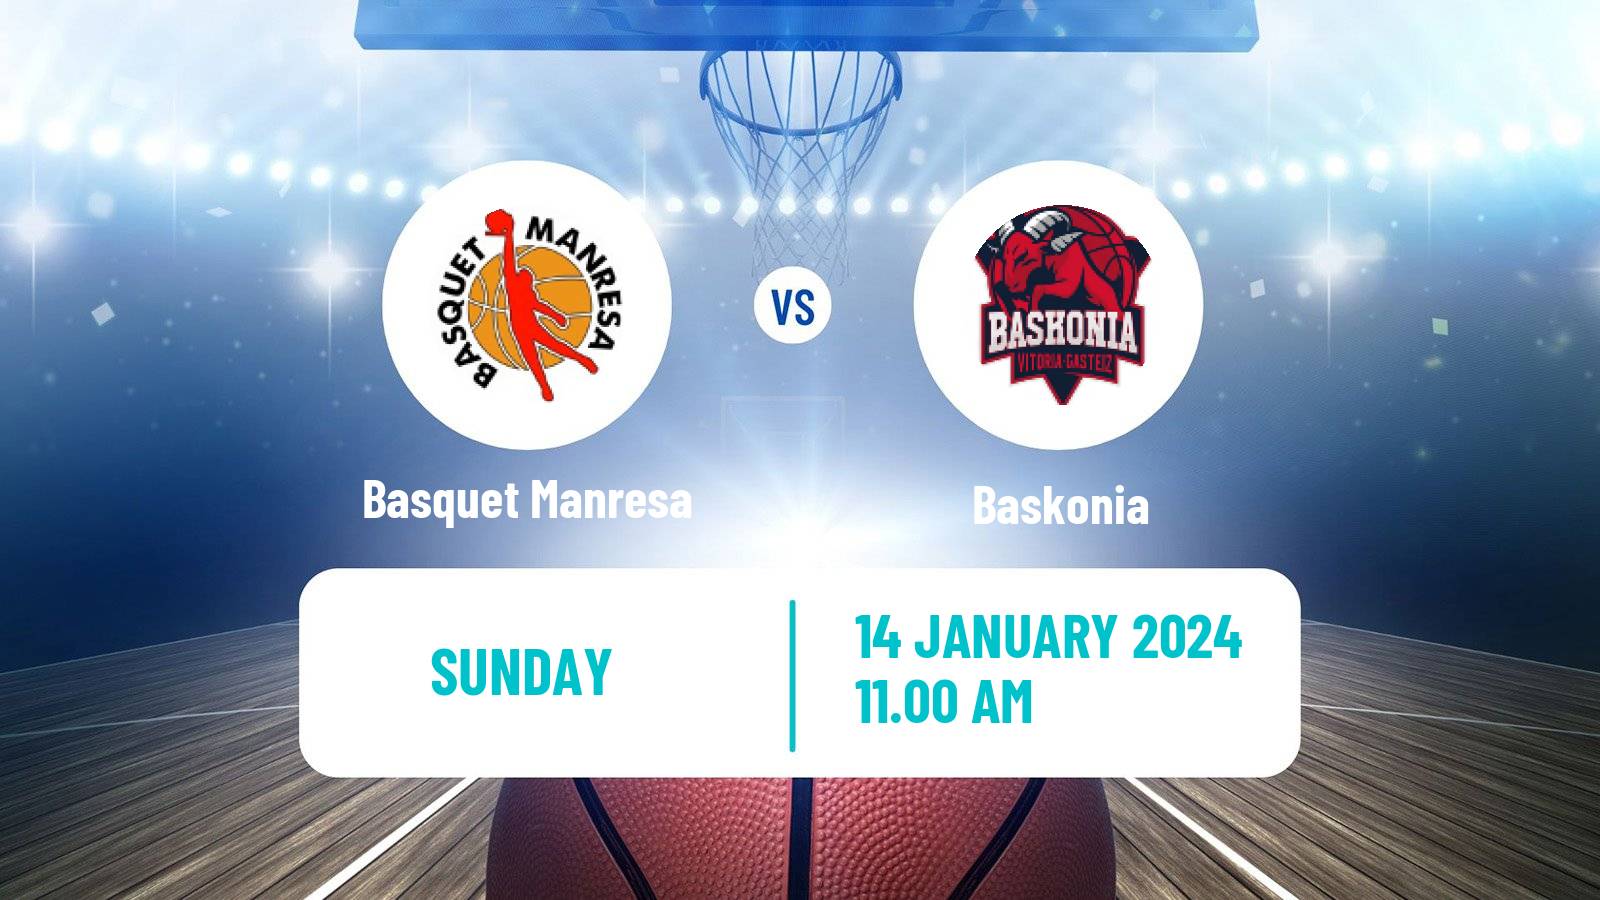 Basketball Spanish ACB League Basquet Manresa - Baskonia